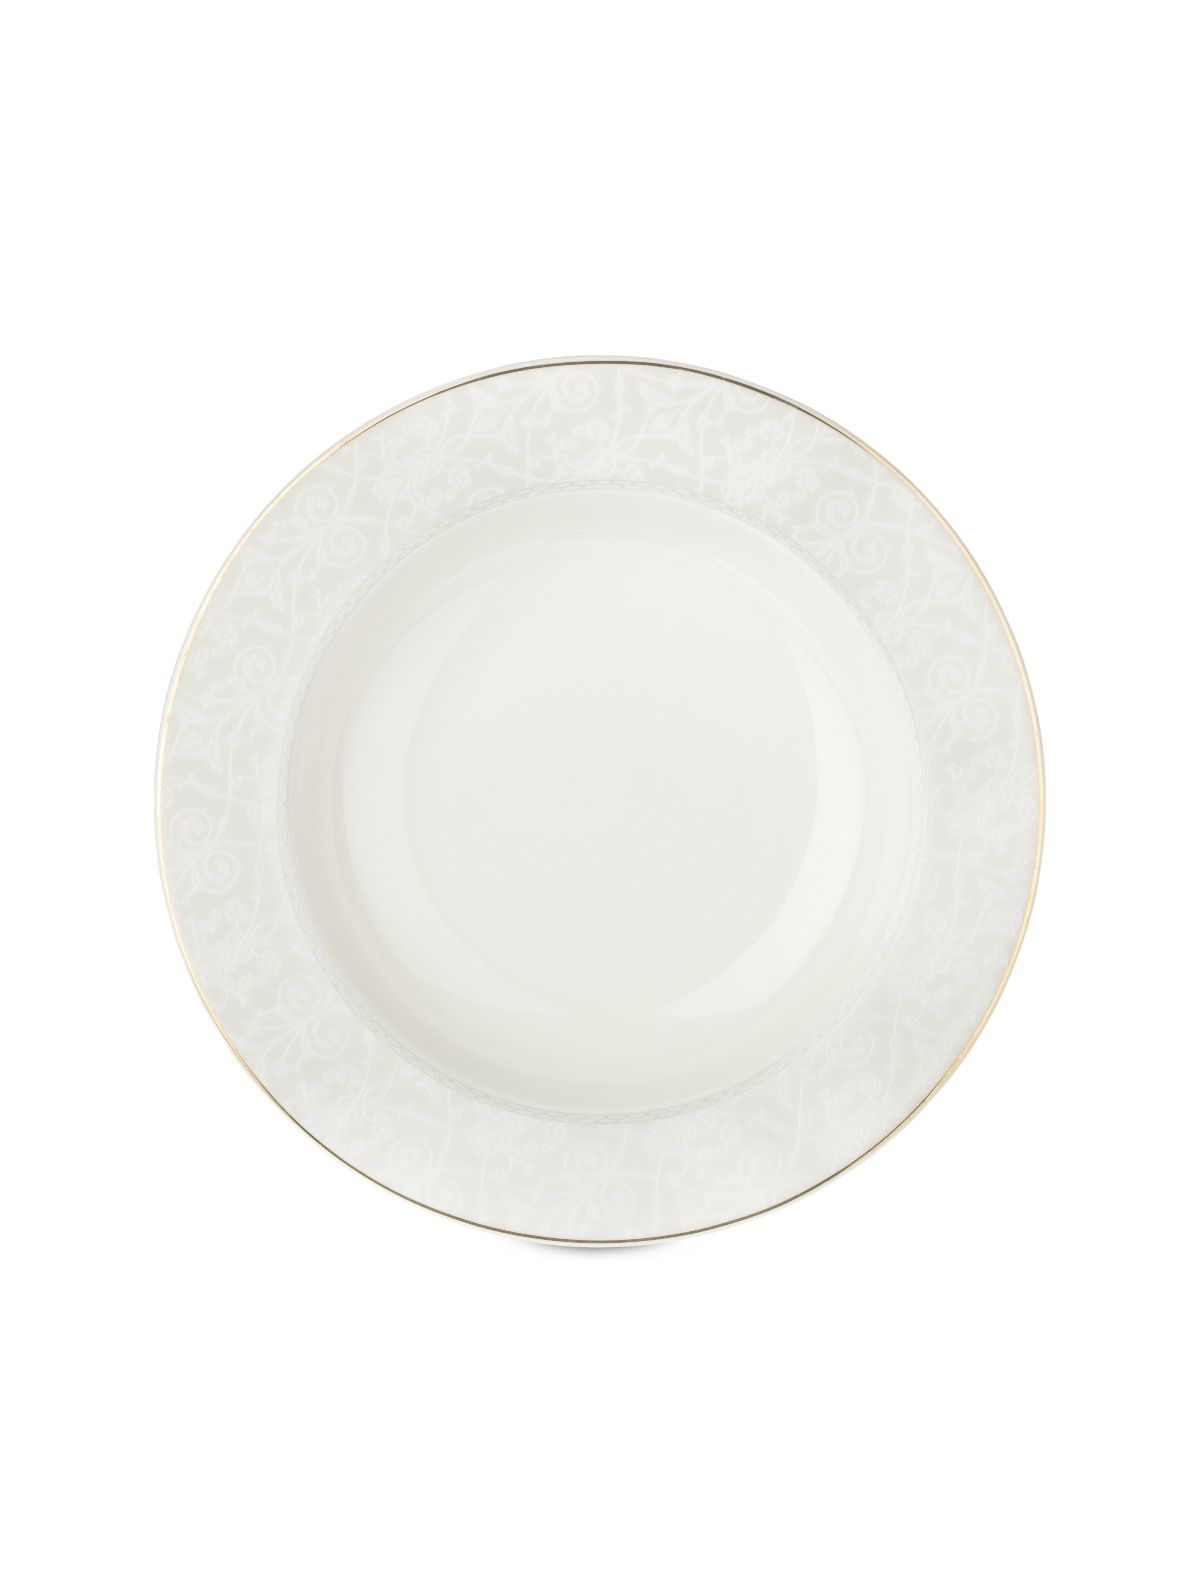 Тарелка суповая ALLURE 21.5см FIORETTA TDP622 тарелка суповая fioretta dynasty tdp082 23см